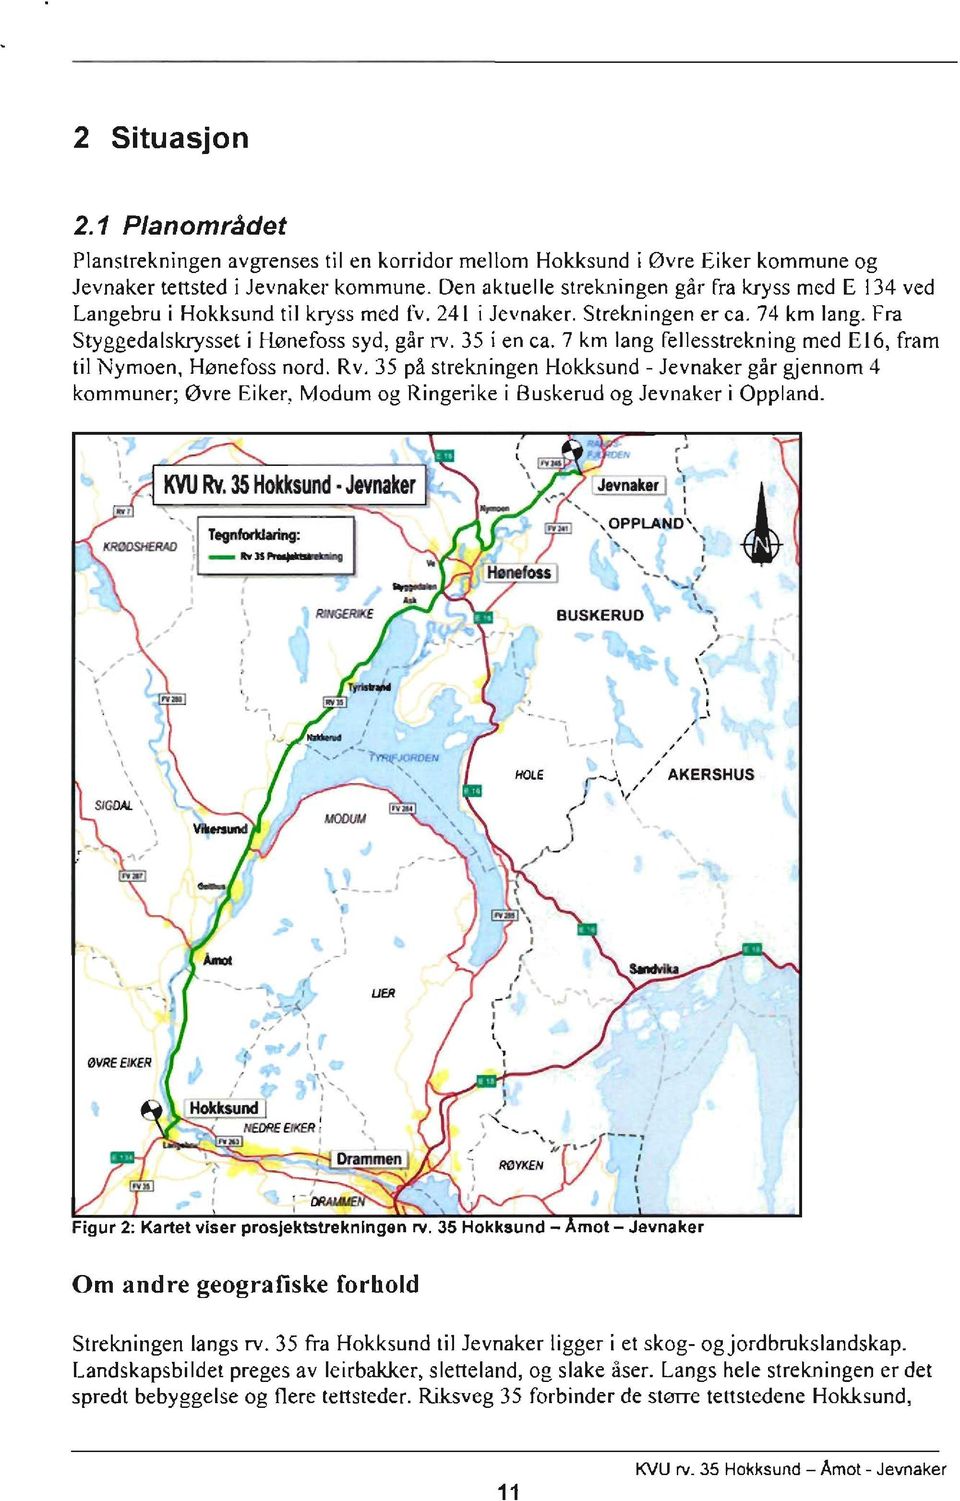 7 km lang fellesstrekning med E16, fram til Nymoen, Hønefoss nord. Rv. 35 på strekningen I lokksund - Jevnaker går gjennom 4 kommuner; øvre Eiker. Modum og Ringerike i Buskerud og Jevnaker i Oppland.